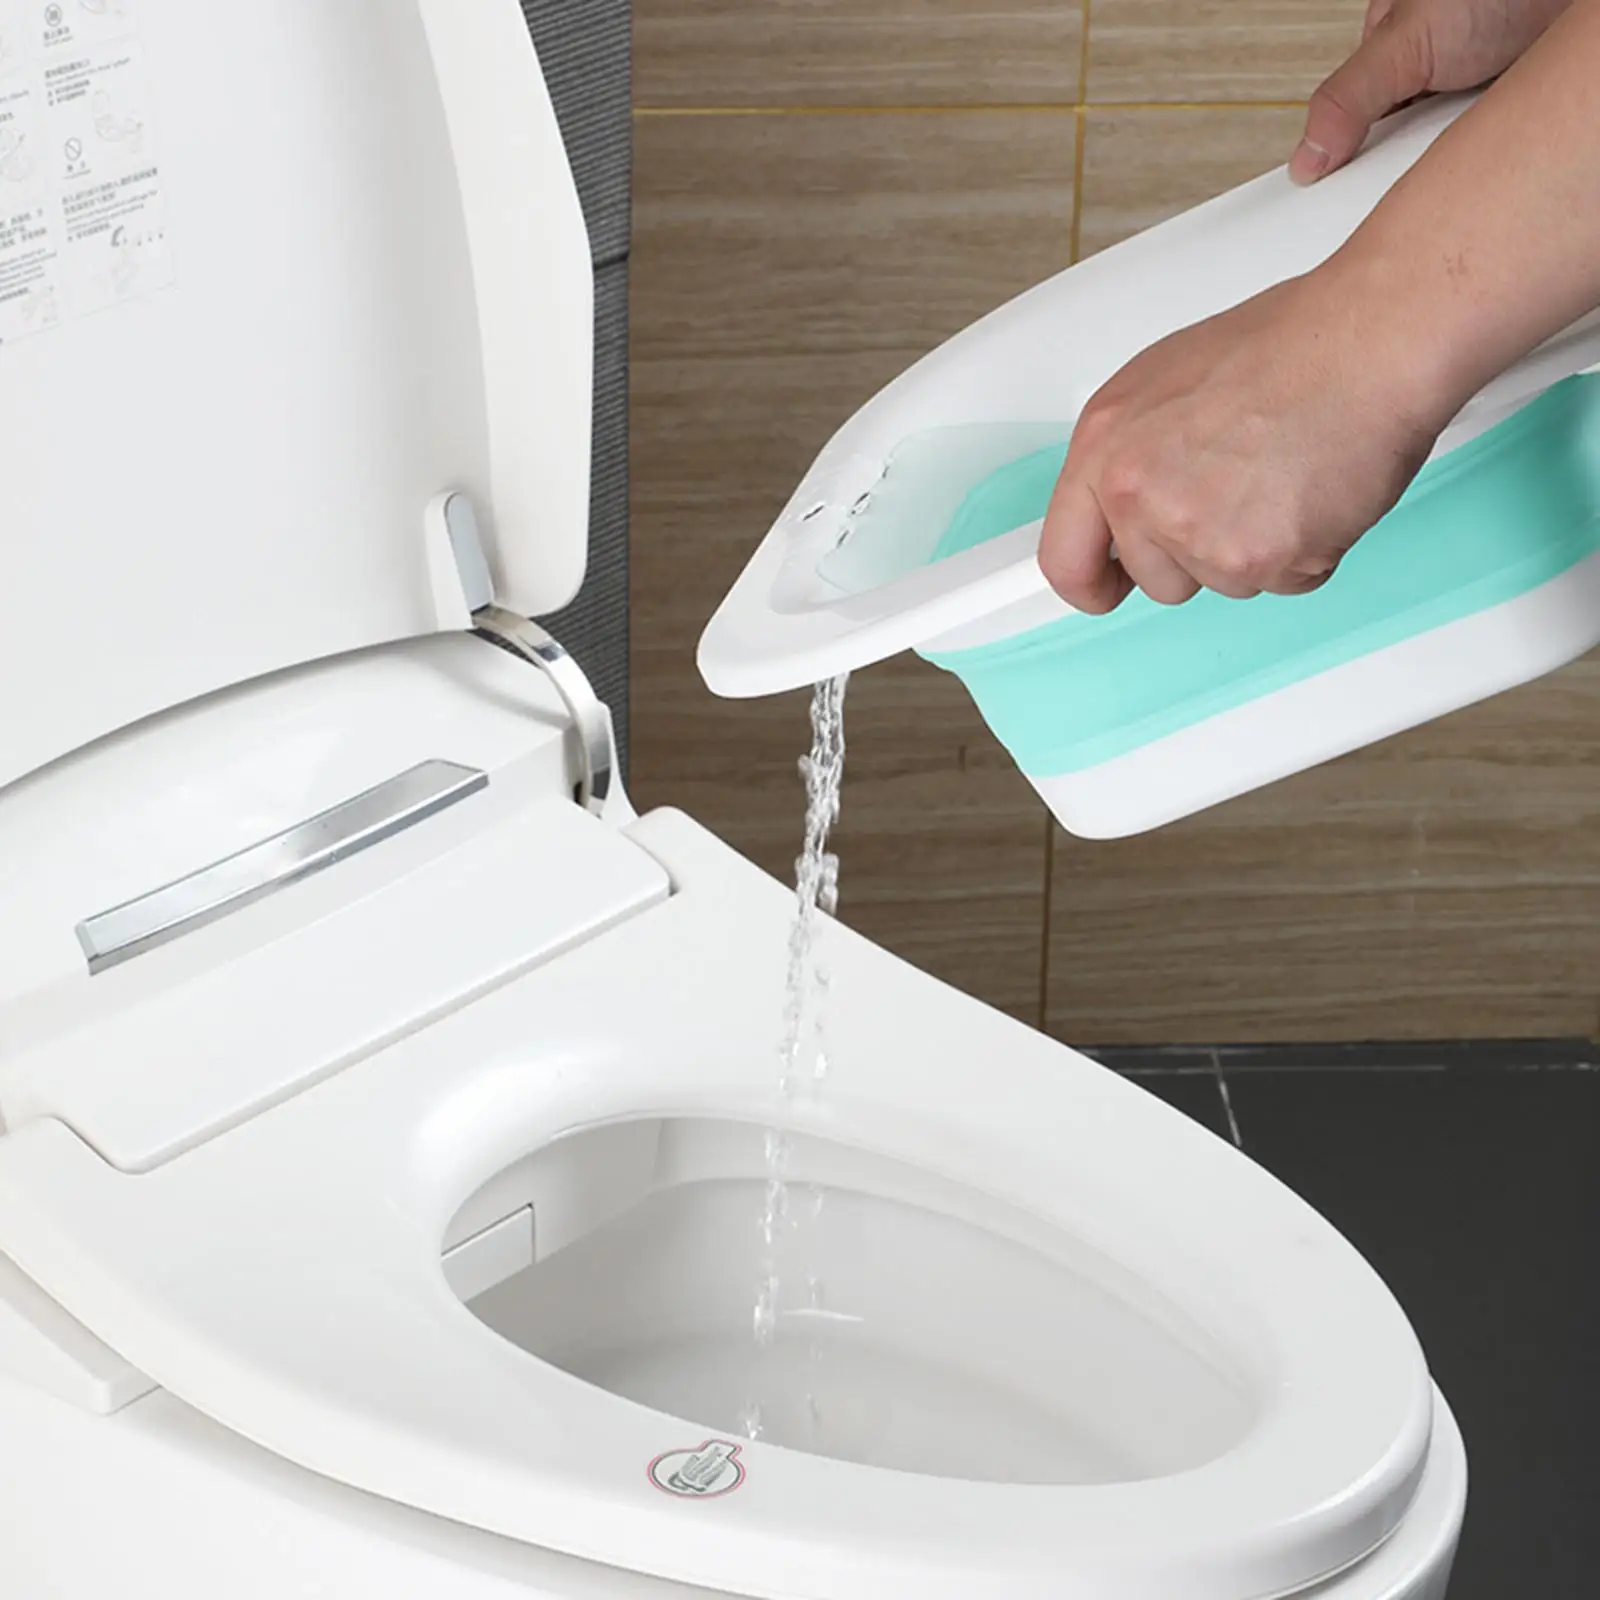 Electric Sitz Bath Tub Basin Bidet Bidet Water Spray for Cleanse Pregnancy Women Postpartum for Standard Toilets Hip Bath Tub